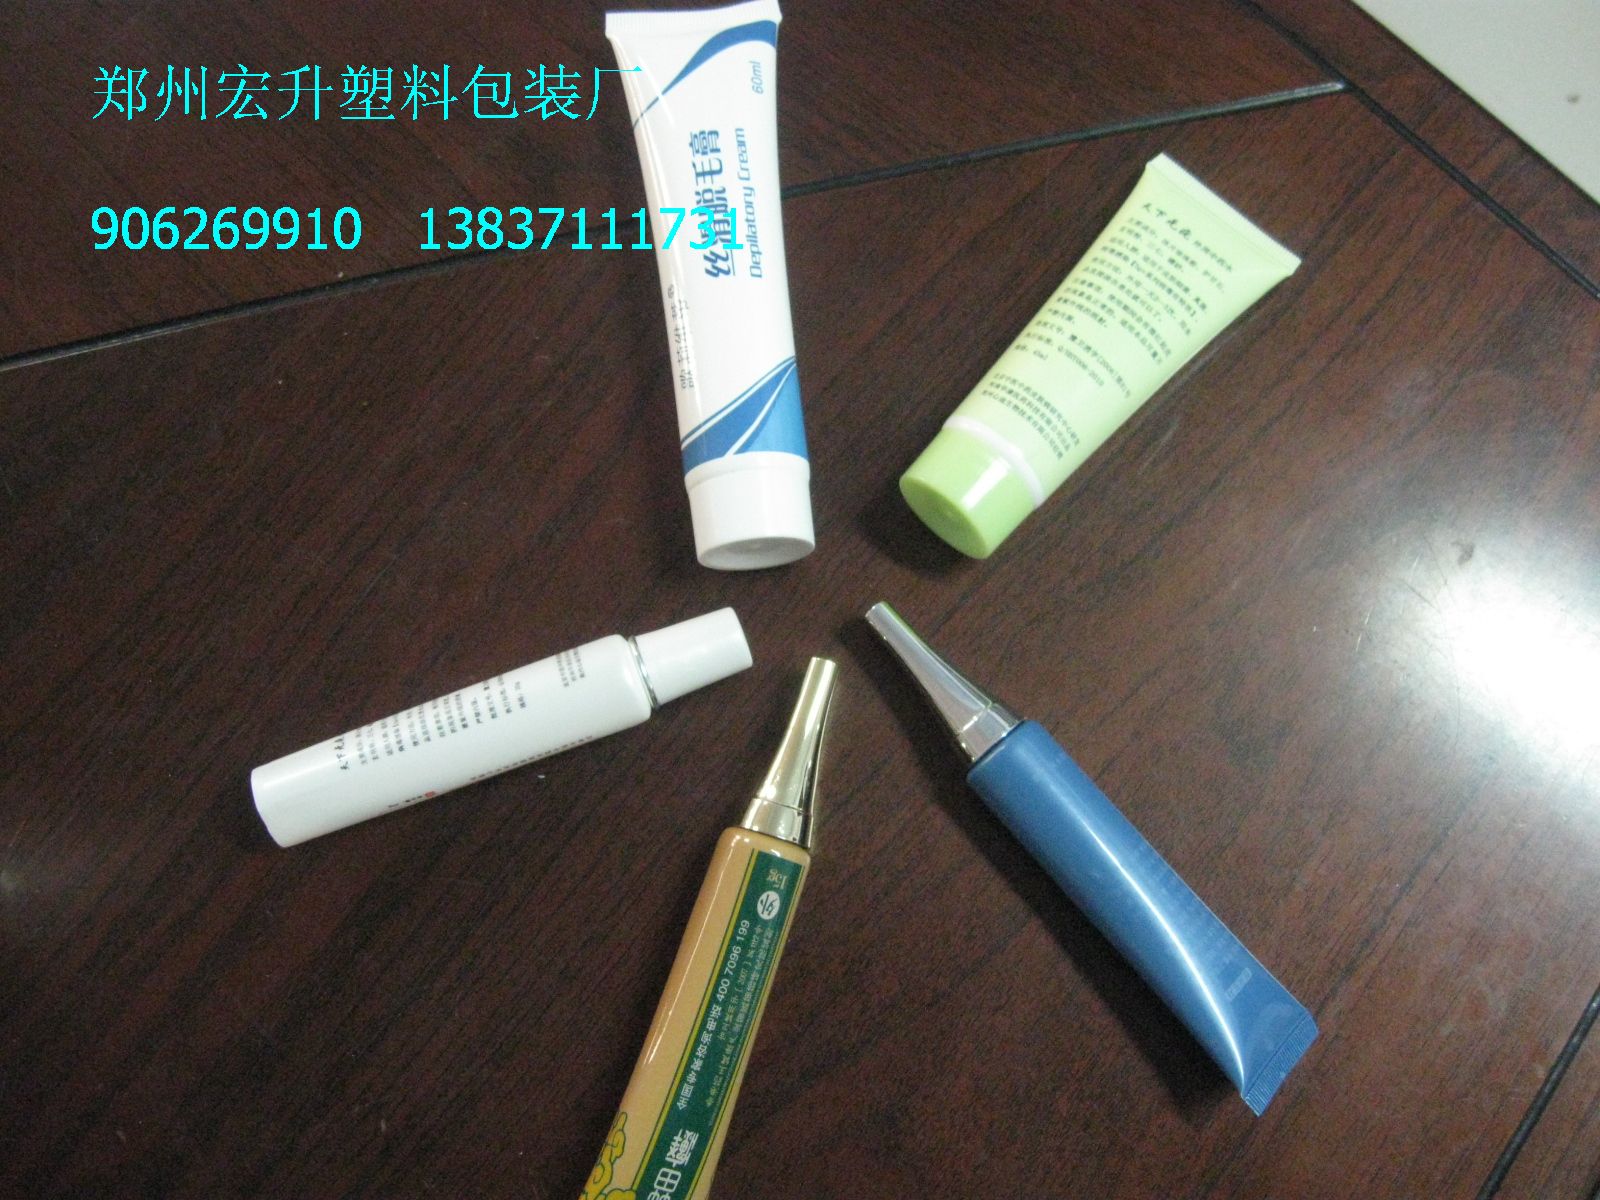 供应大连化妆品软管包装价格 塑料软管外包装厂家定制 管子包装价格图片